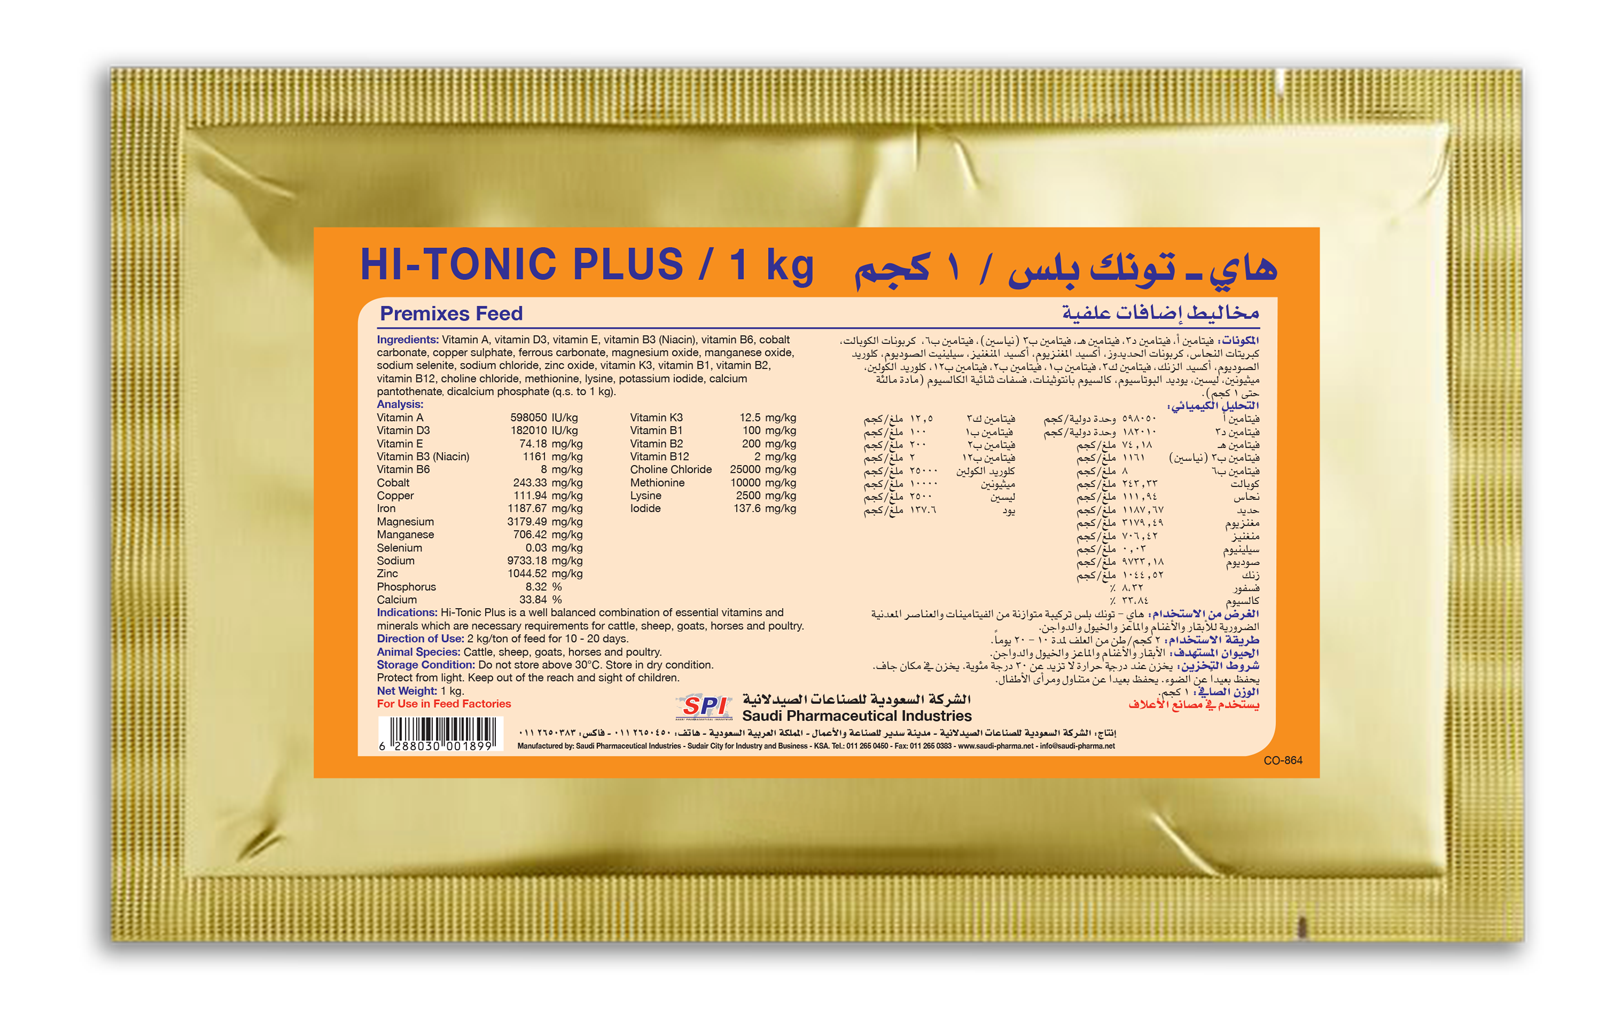 Hi-Tonic Plus 1 kg